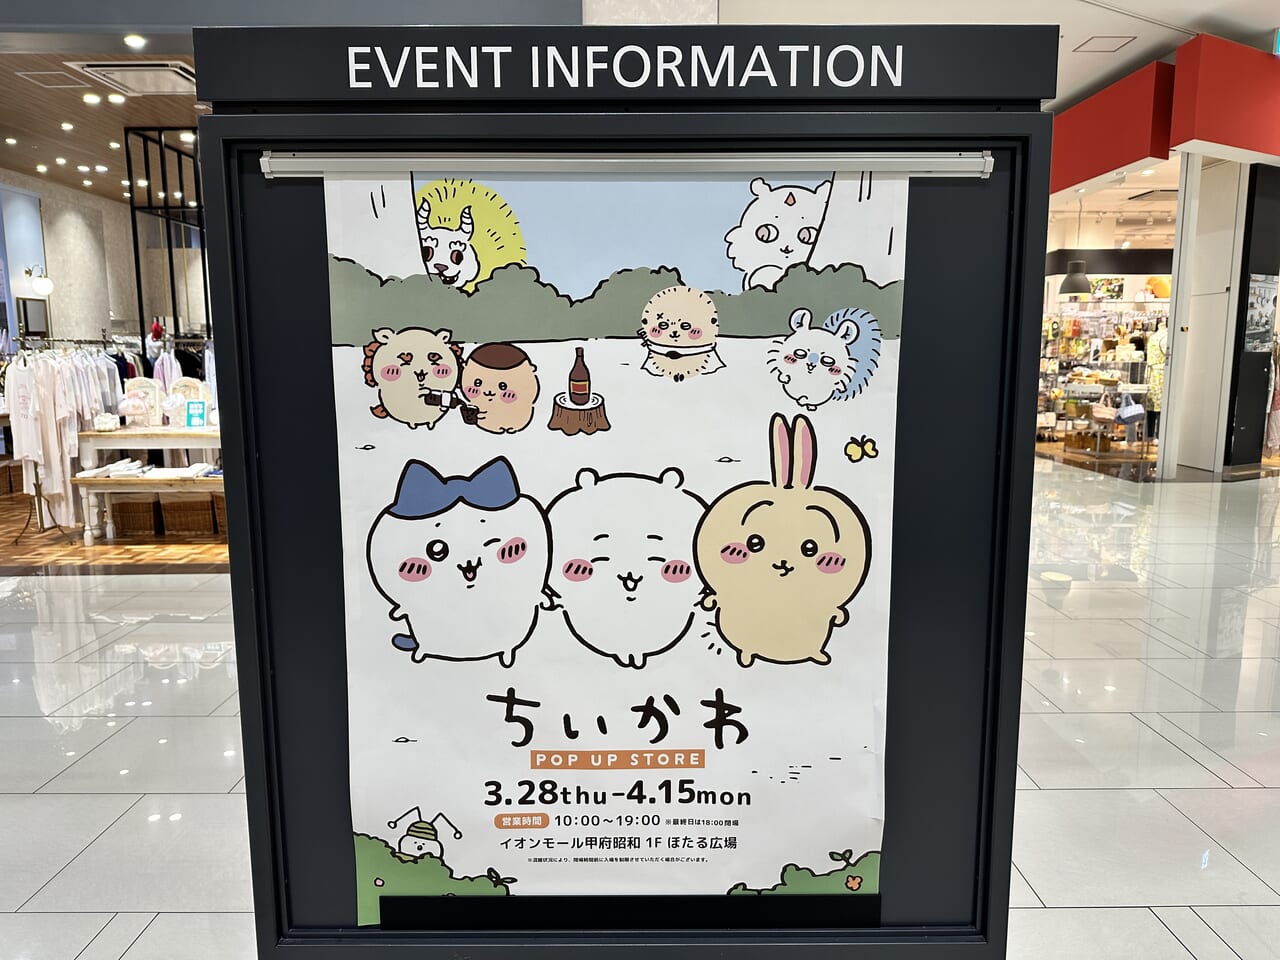 イオンモール甲府昭和店のイベントインフォメーションにちいかわポップアップストアが掲載されている